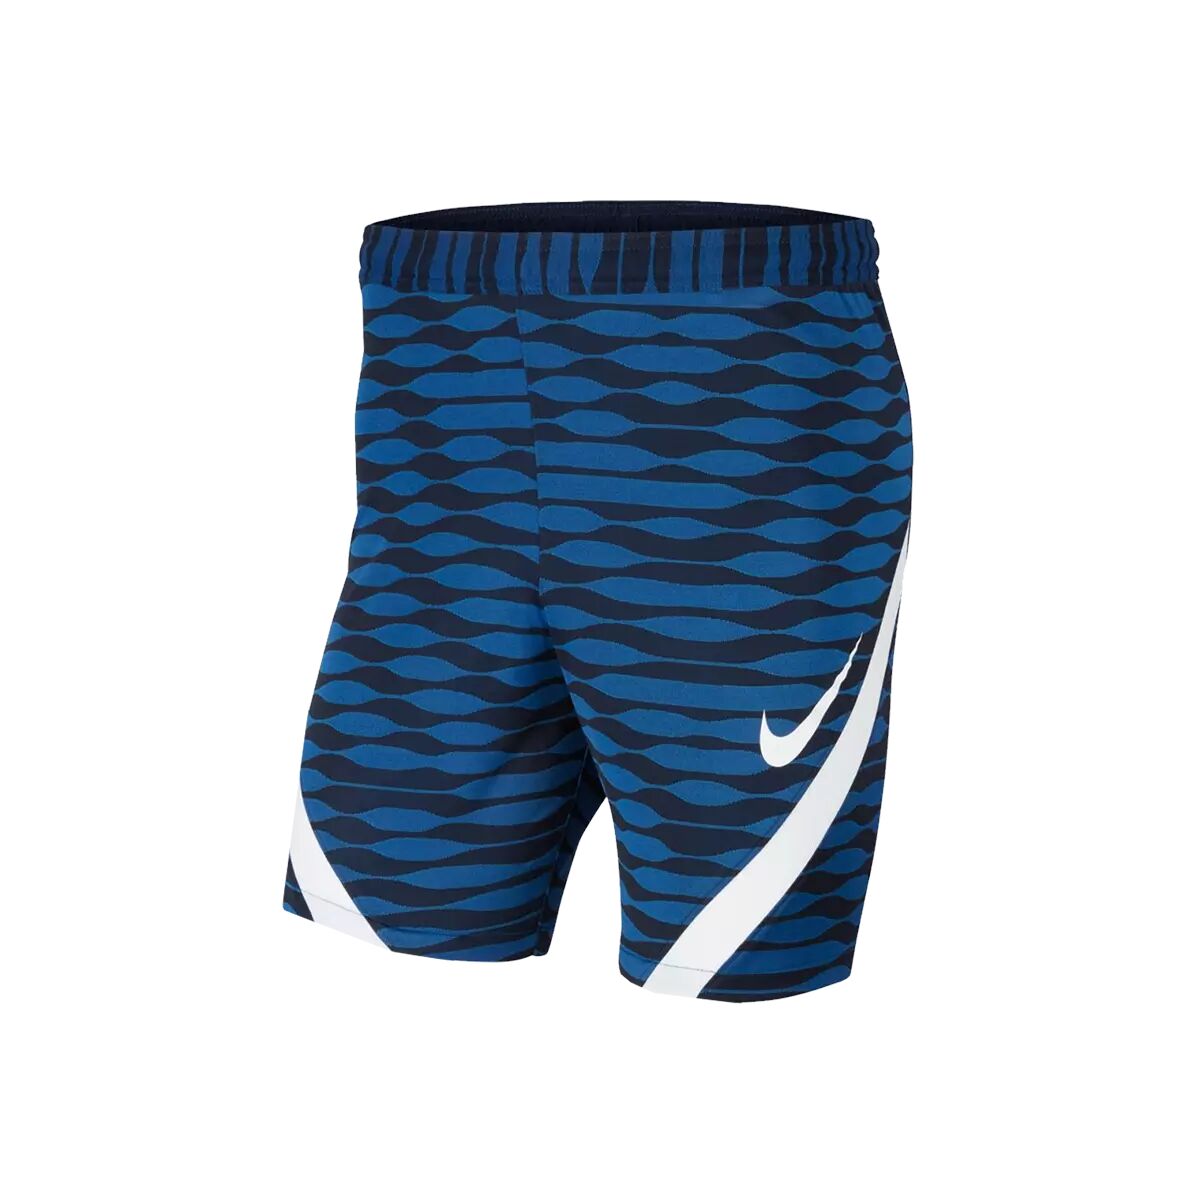 Nike Short Nike enfant Strike 21 bleu foncé / blanc  - bleu - Size: 137 - 147 cm